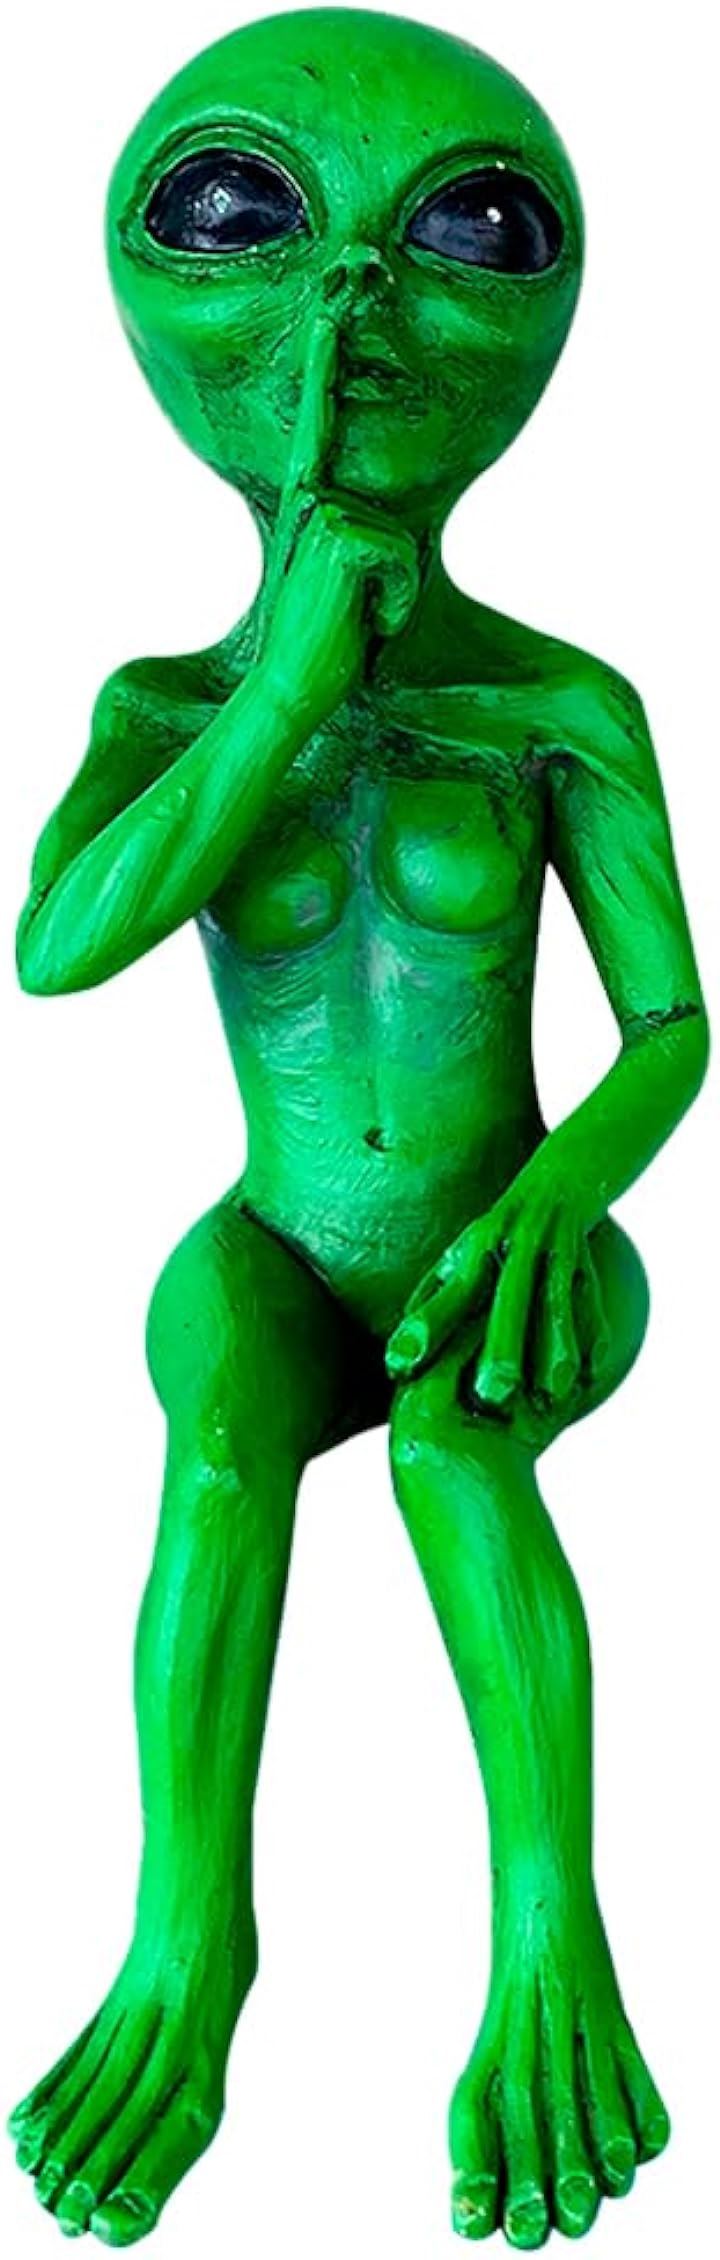 エイリアン 宇宙人 置物 オブジェ 装飾 飾り フィギュア 彫像 ミニチュア インテリア( グリーン)